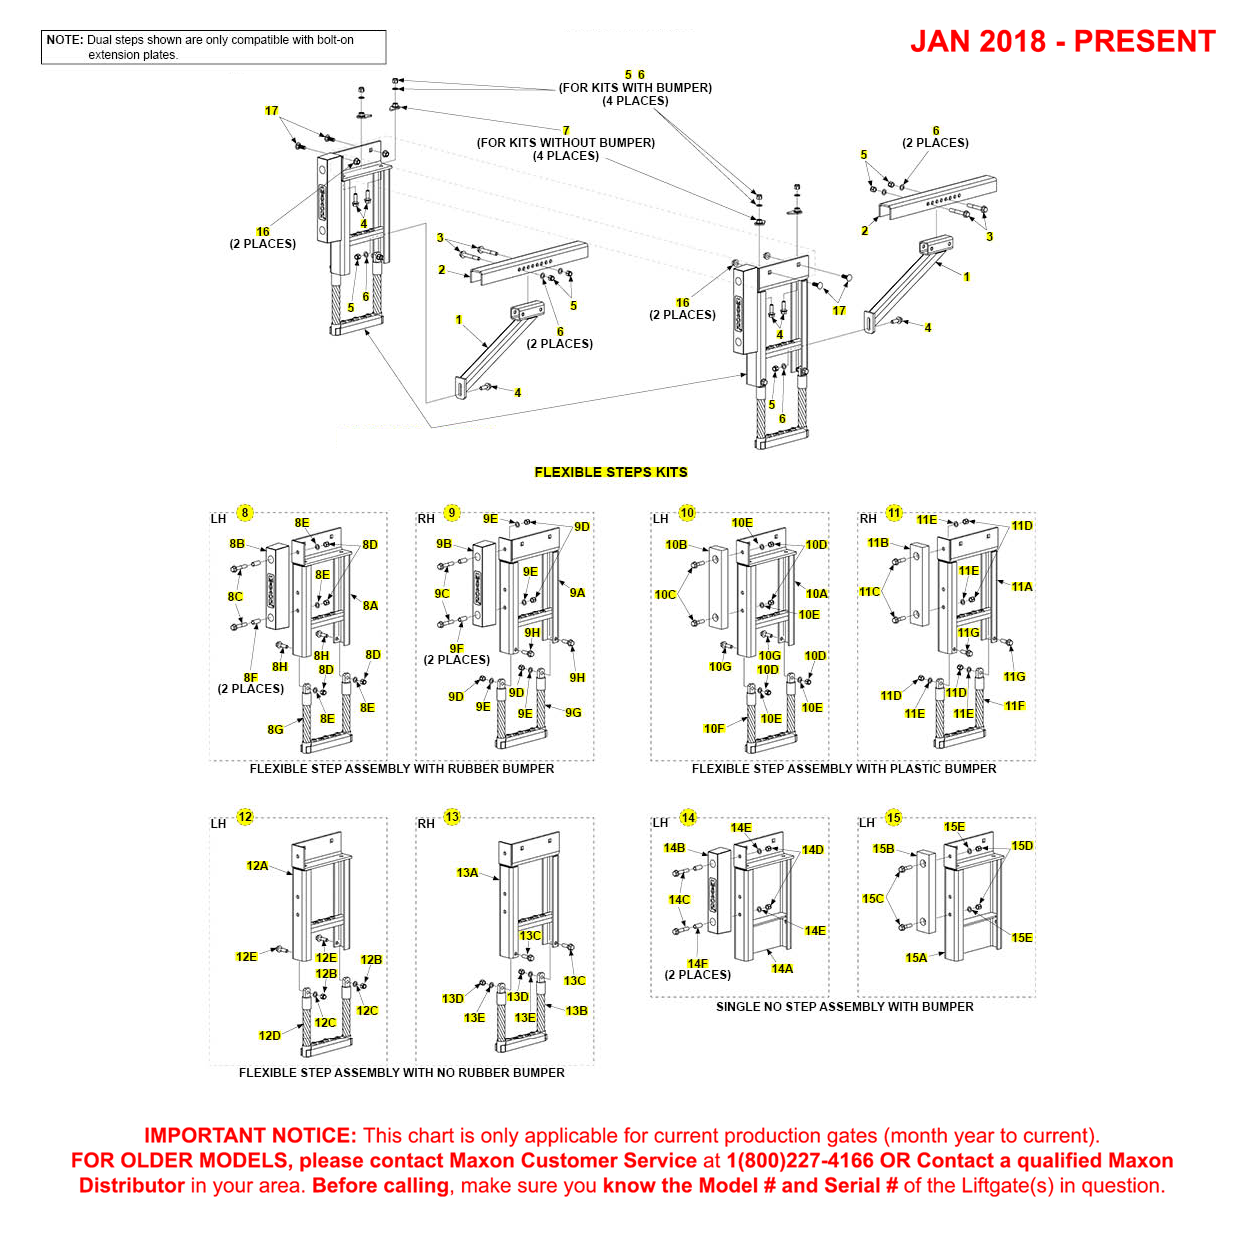 Maxon TE-15 And TE-20 (Jan 2018 - Present) Flexible Step Kit Diagram